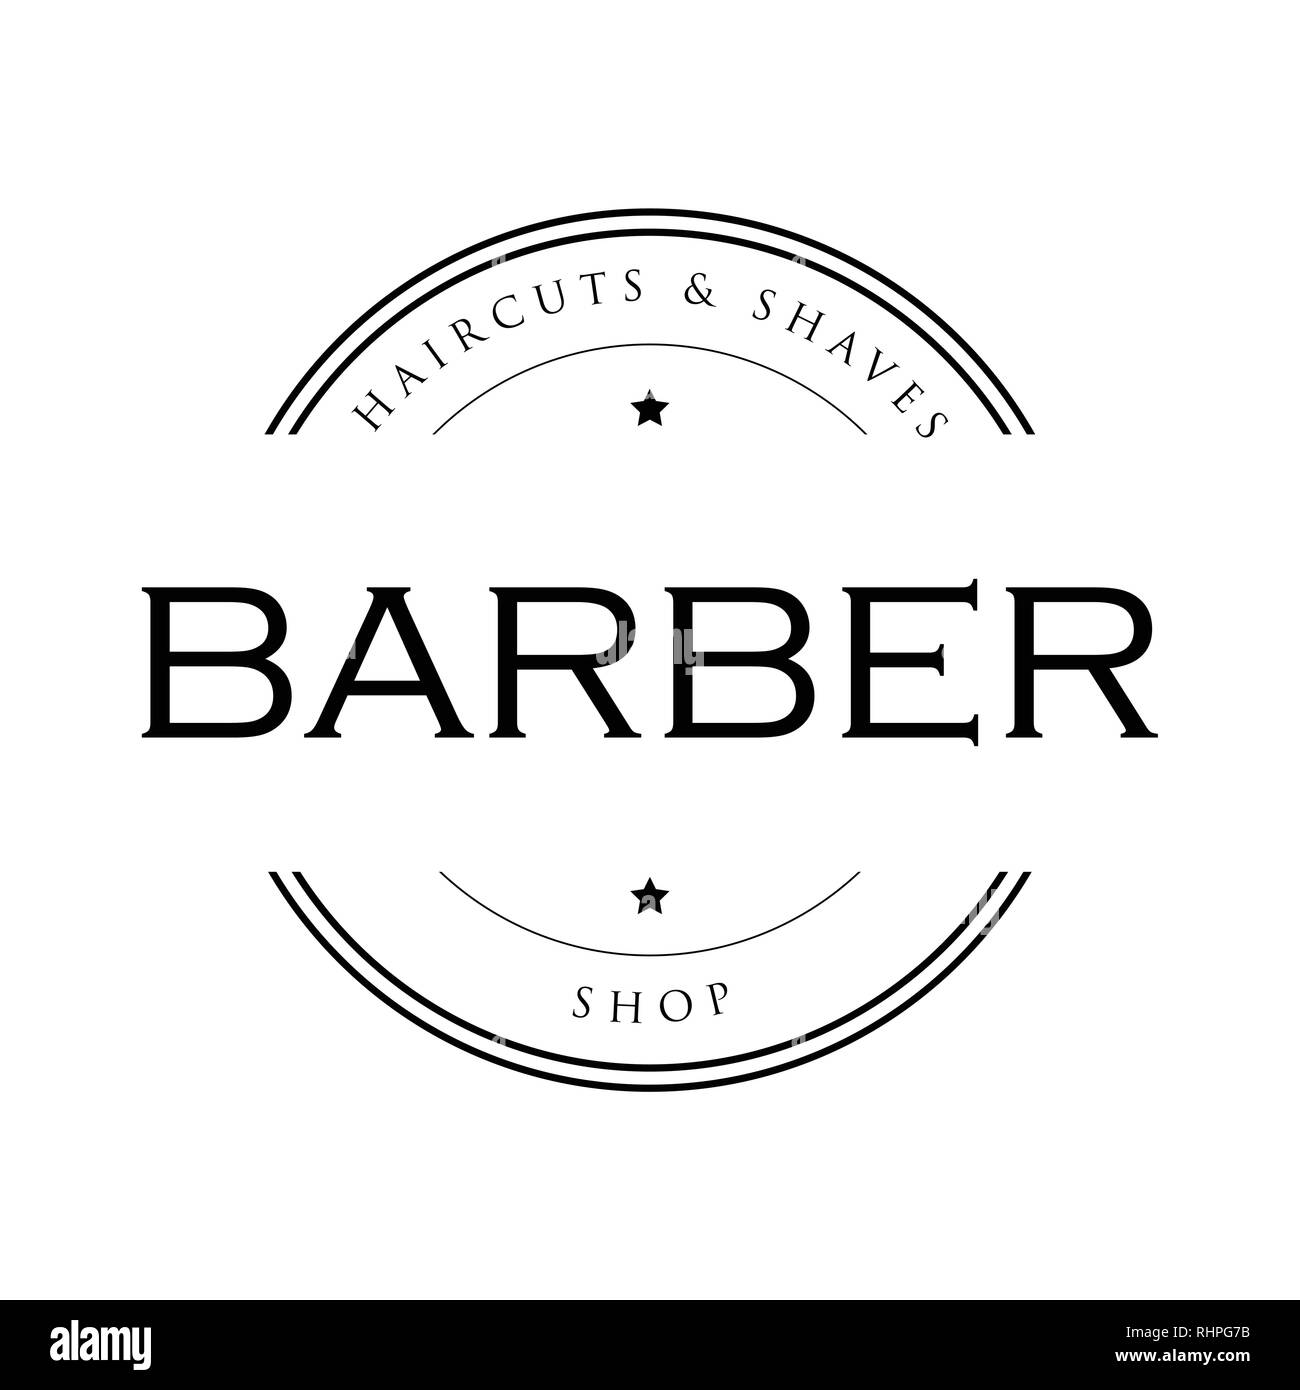 Barber vintage sign stamp Stock Vector